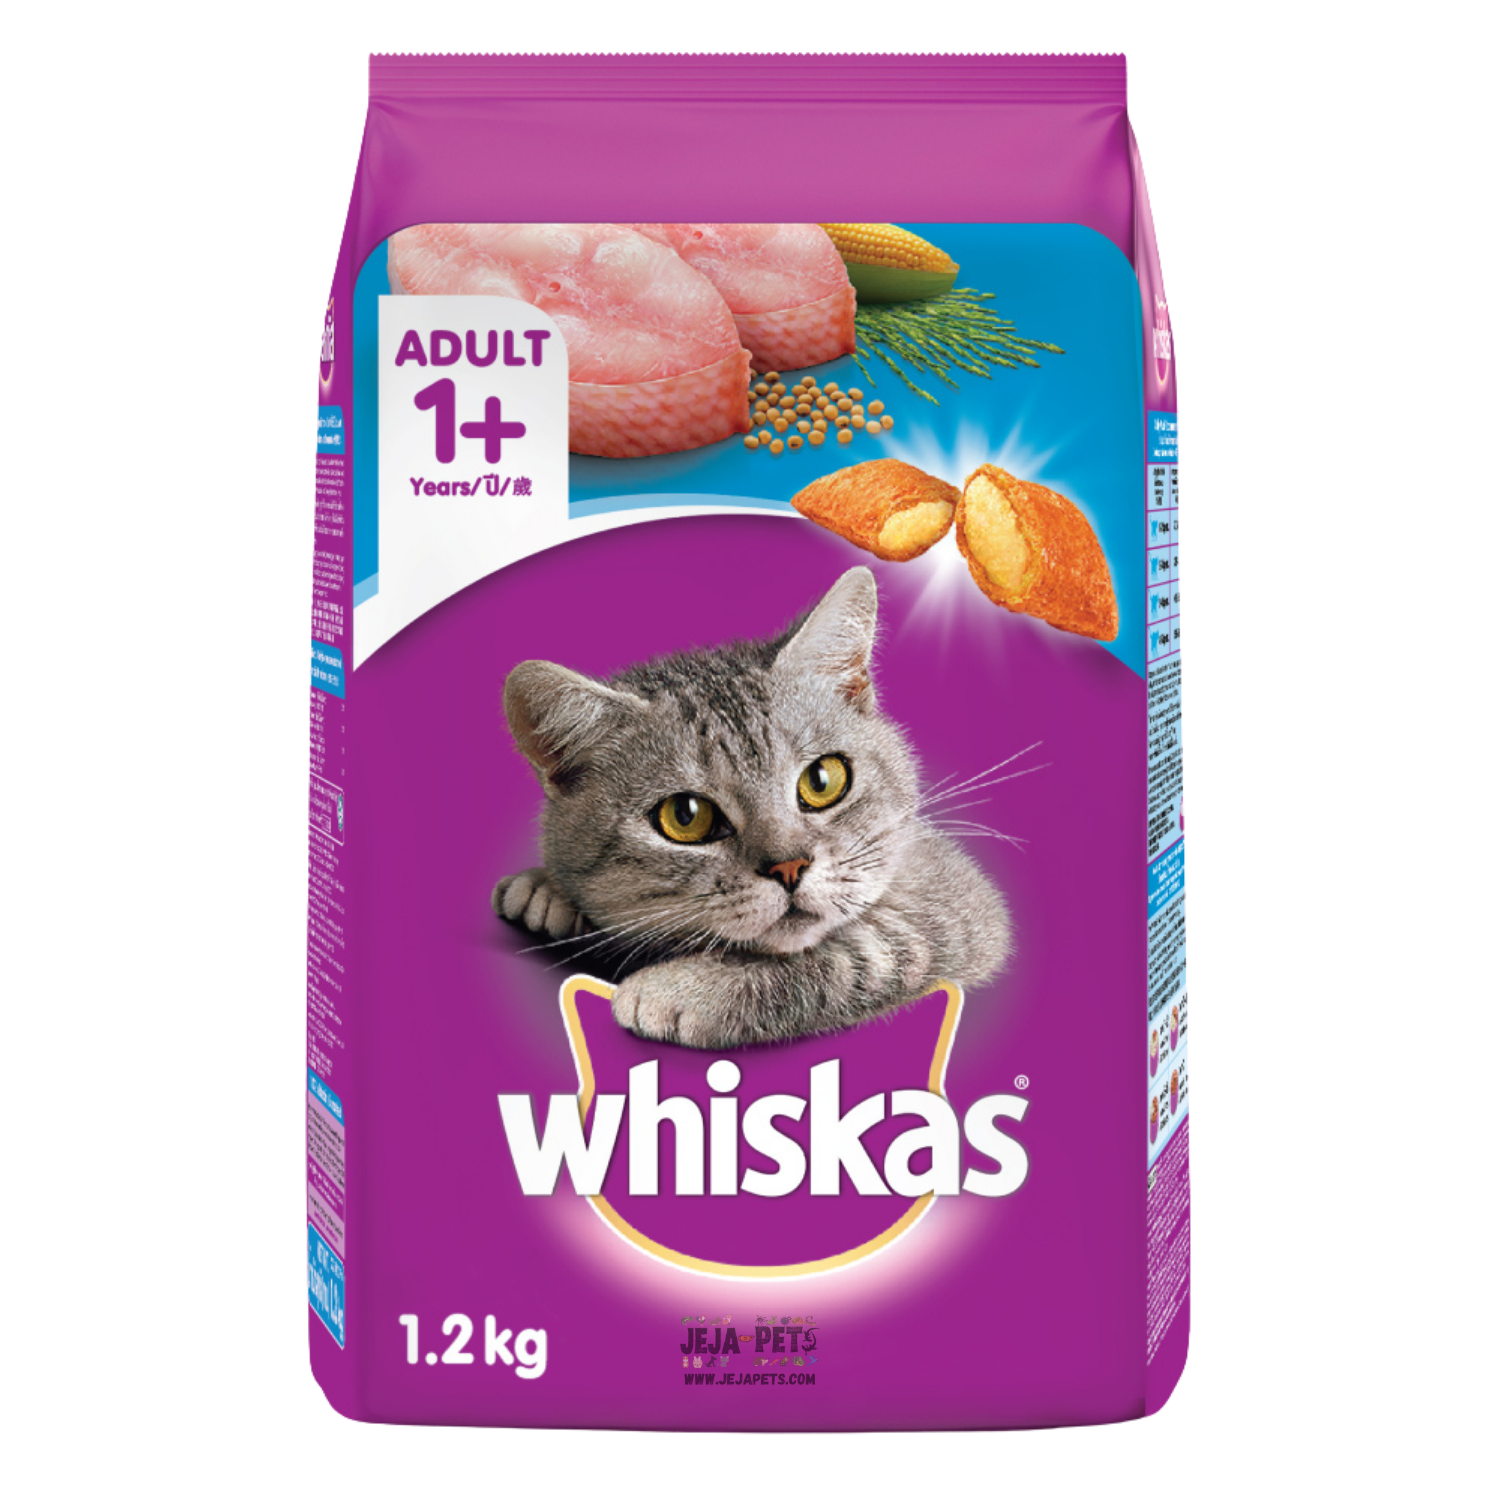 Whiskas Ocean Fish Cat Dry Food - 480g / 1.2kg